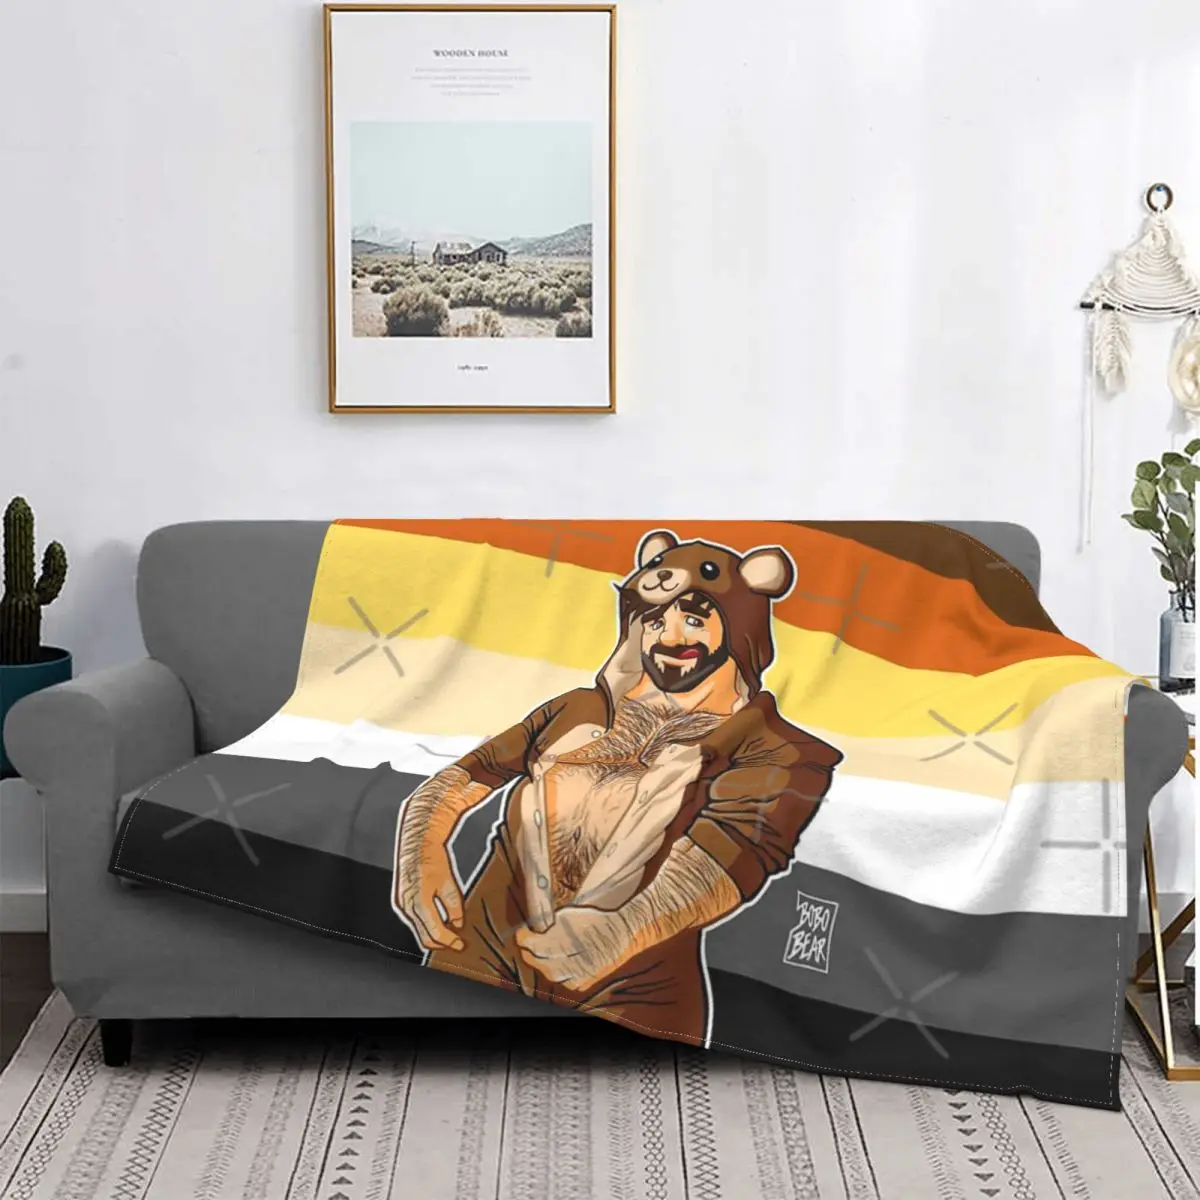 

Adam Likes Teddy Bears - Bear Pride Blanket Bedspread Bed Plaid Comforter Towel Beach Summer Blanket Islam Prayer Rug